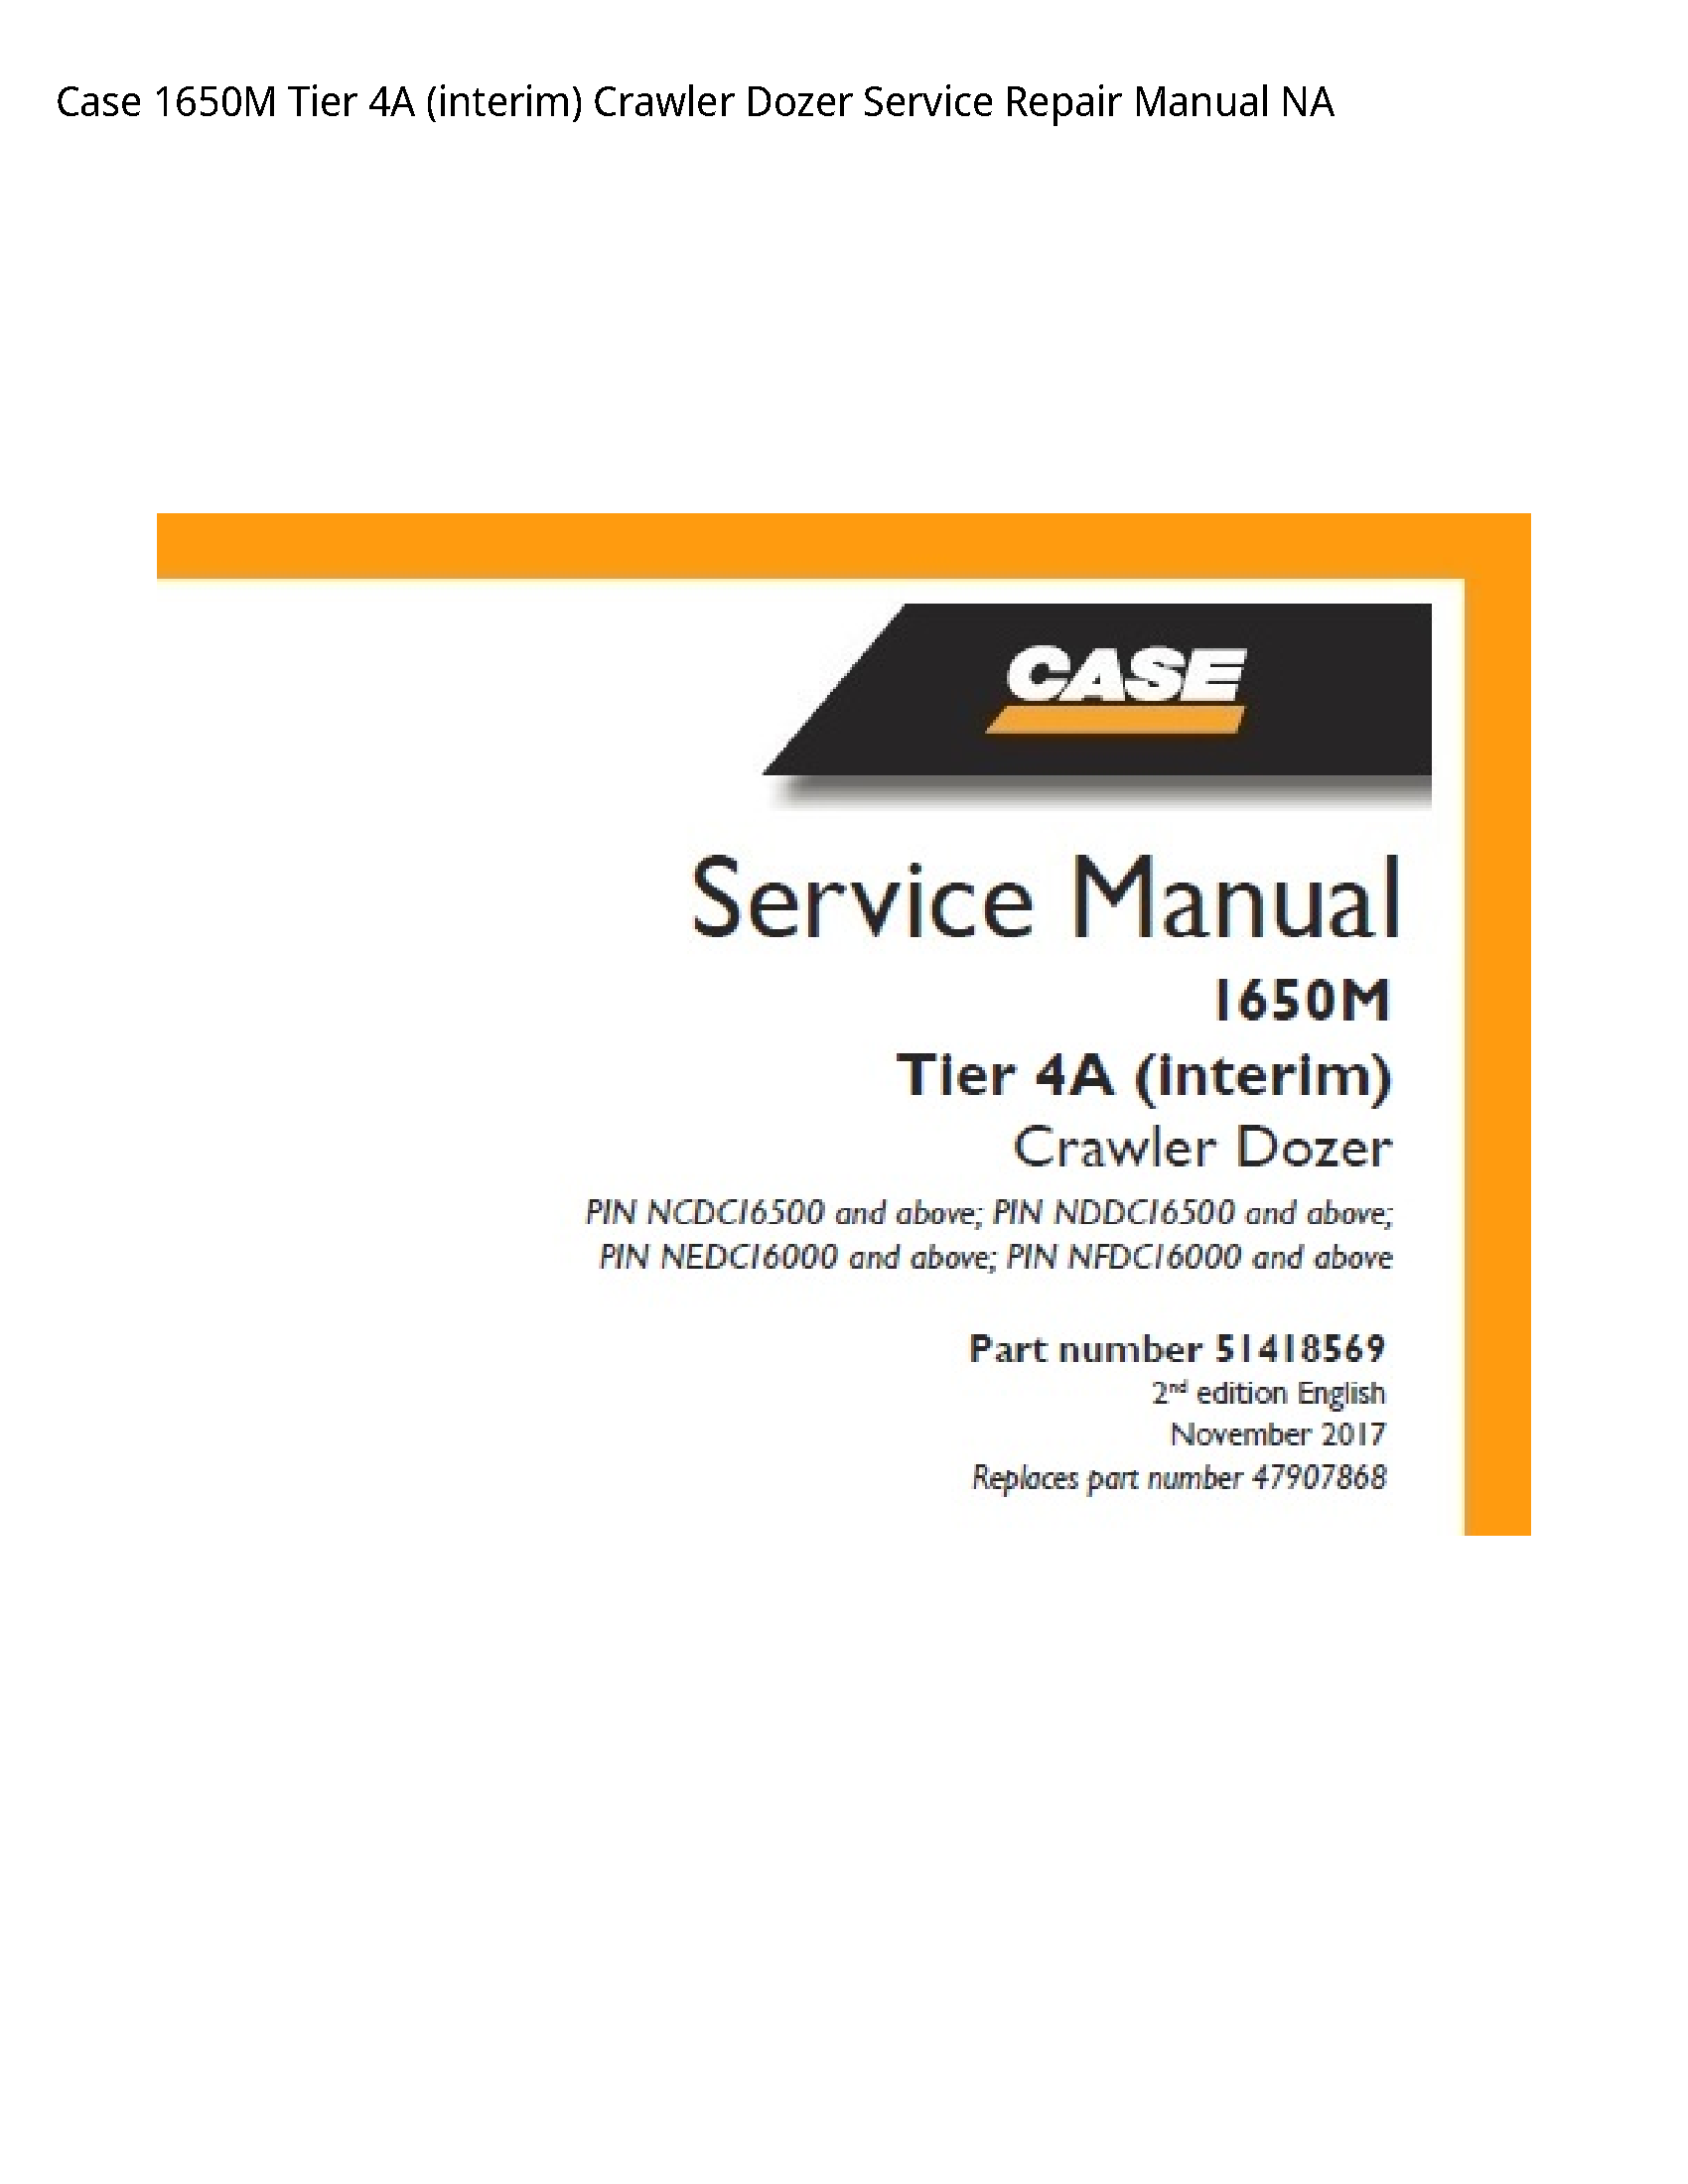 Case/Case IH 1650M Tier (interim) Crawler Dozer manual